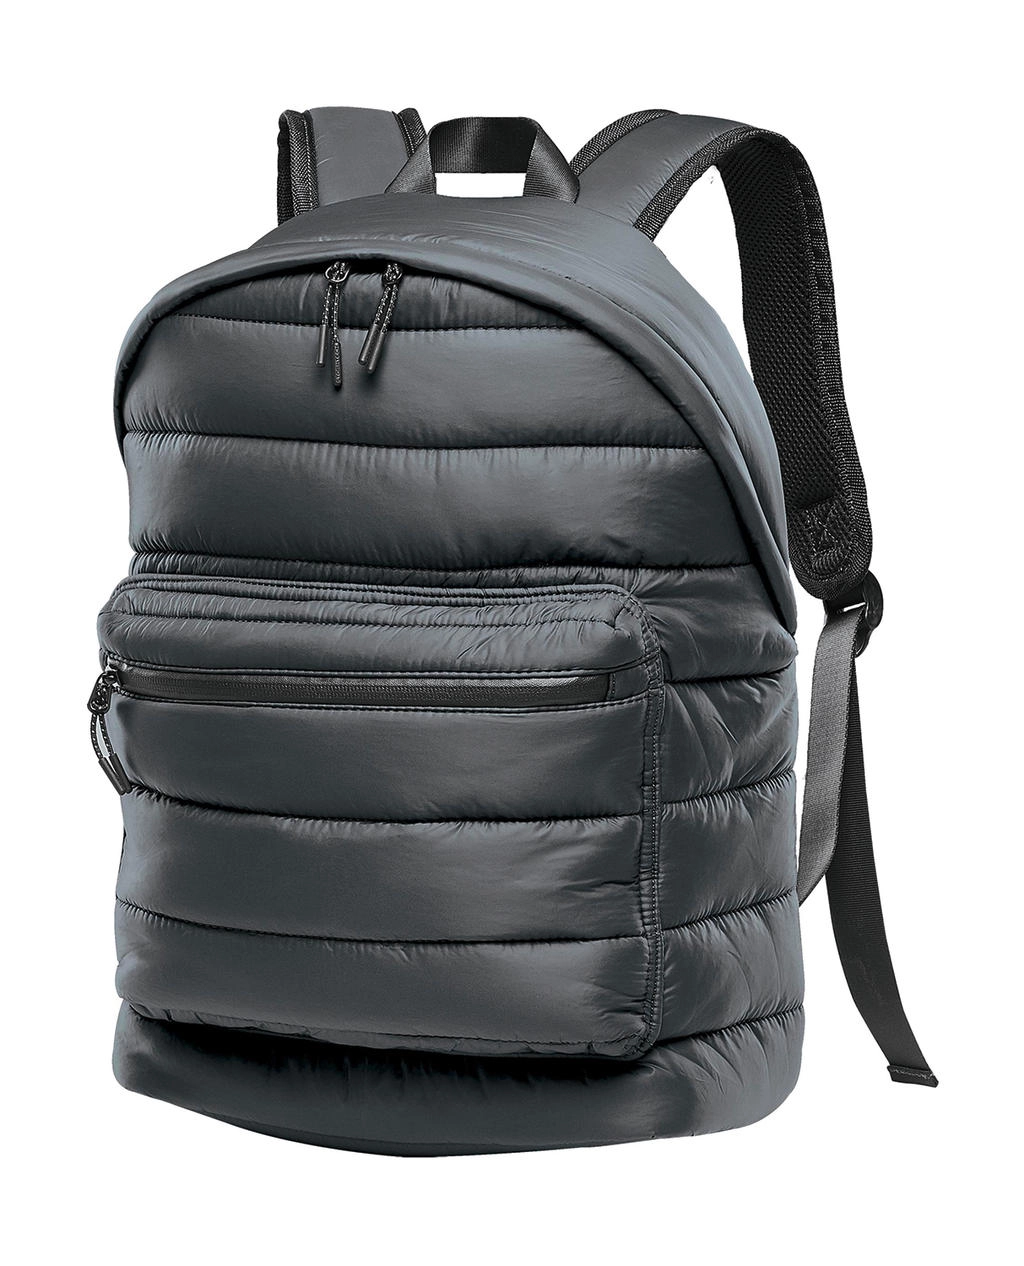 Stavanger Quilted Backpack zum Besticken und Bedrucken in der Farbe Graphite mit Ihren Logo, Schriftzug oder Motiv.